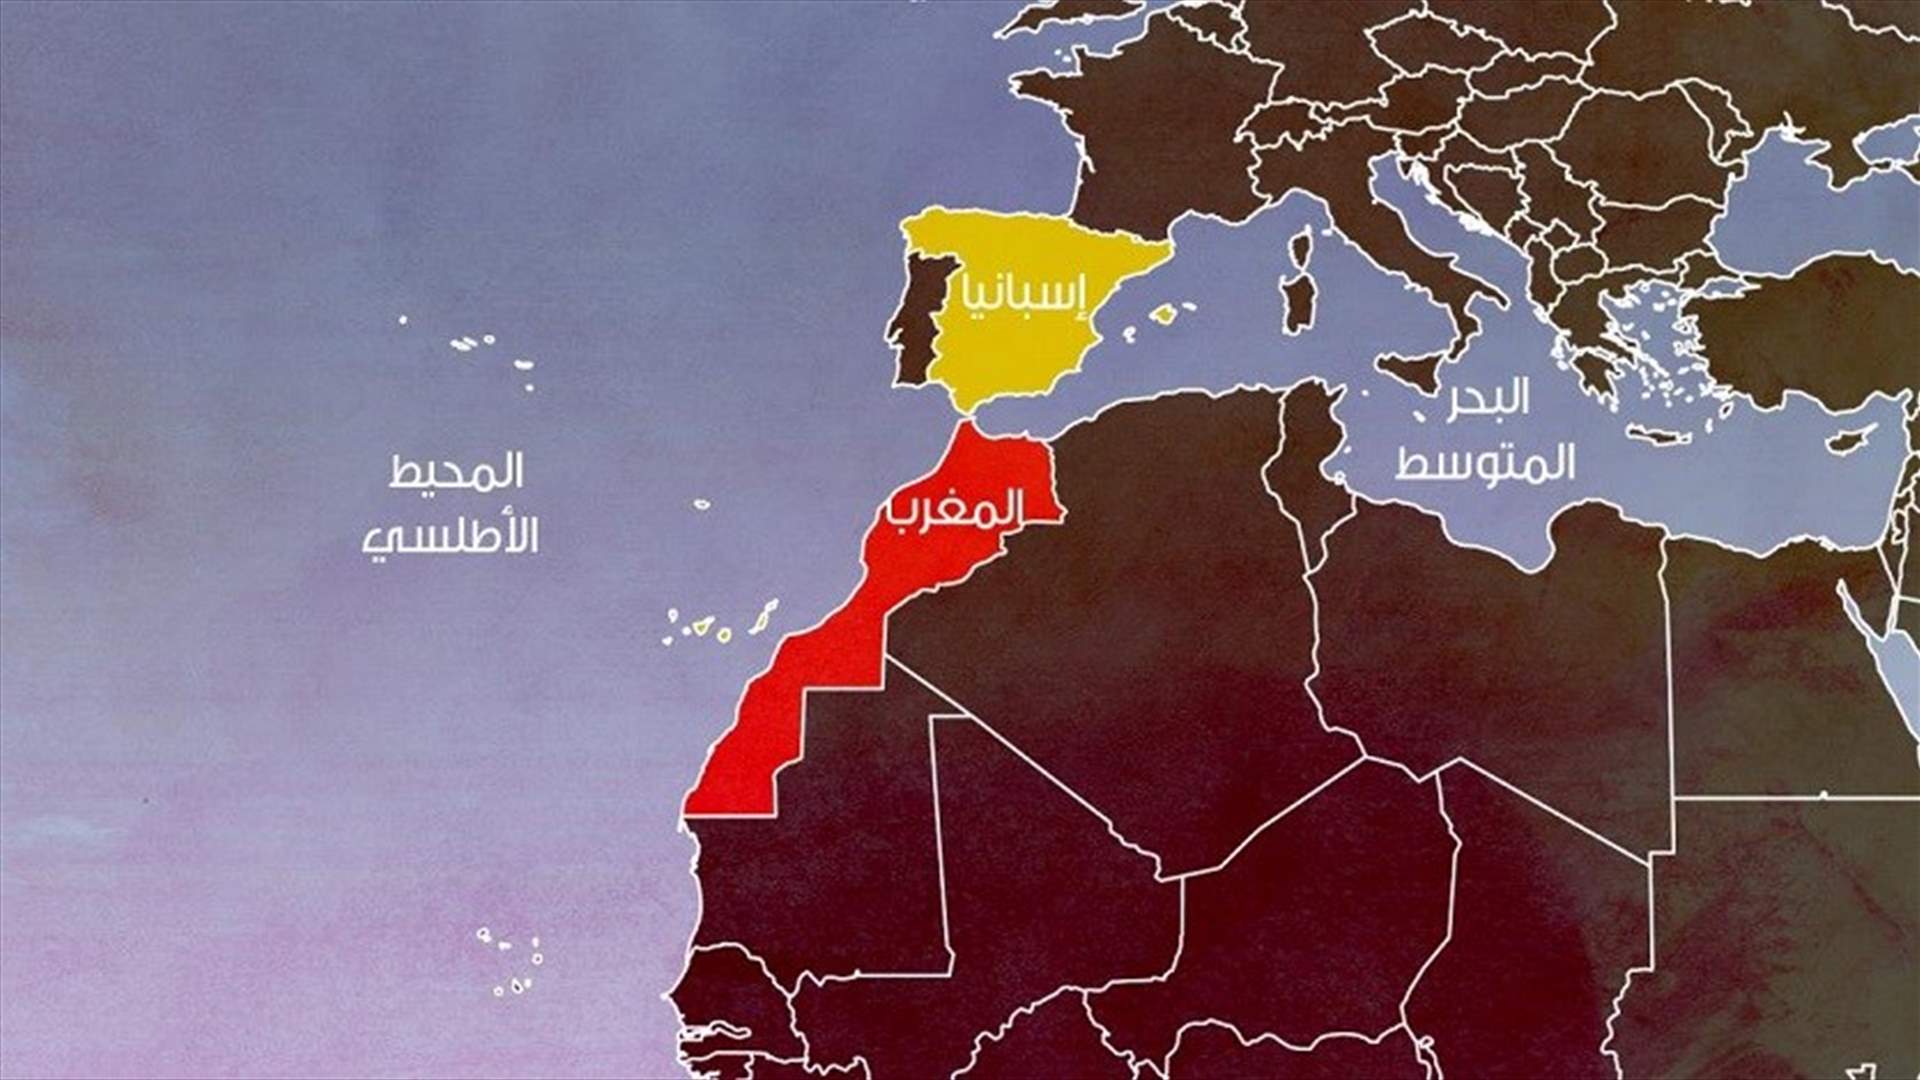 تفكيك &quot;خلية إرهابية&quot; بين المغرب واسبانيا في عملية مشتركة بين البلدين